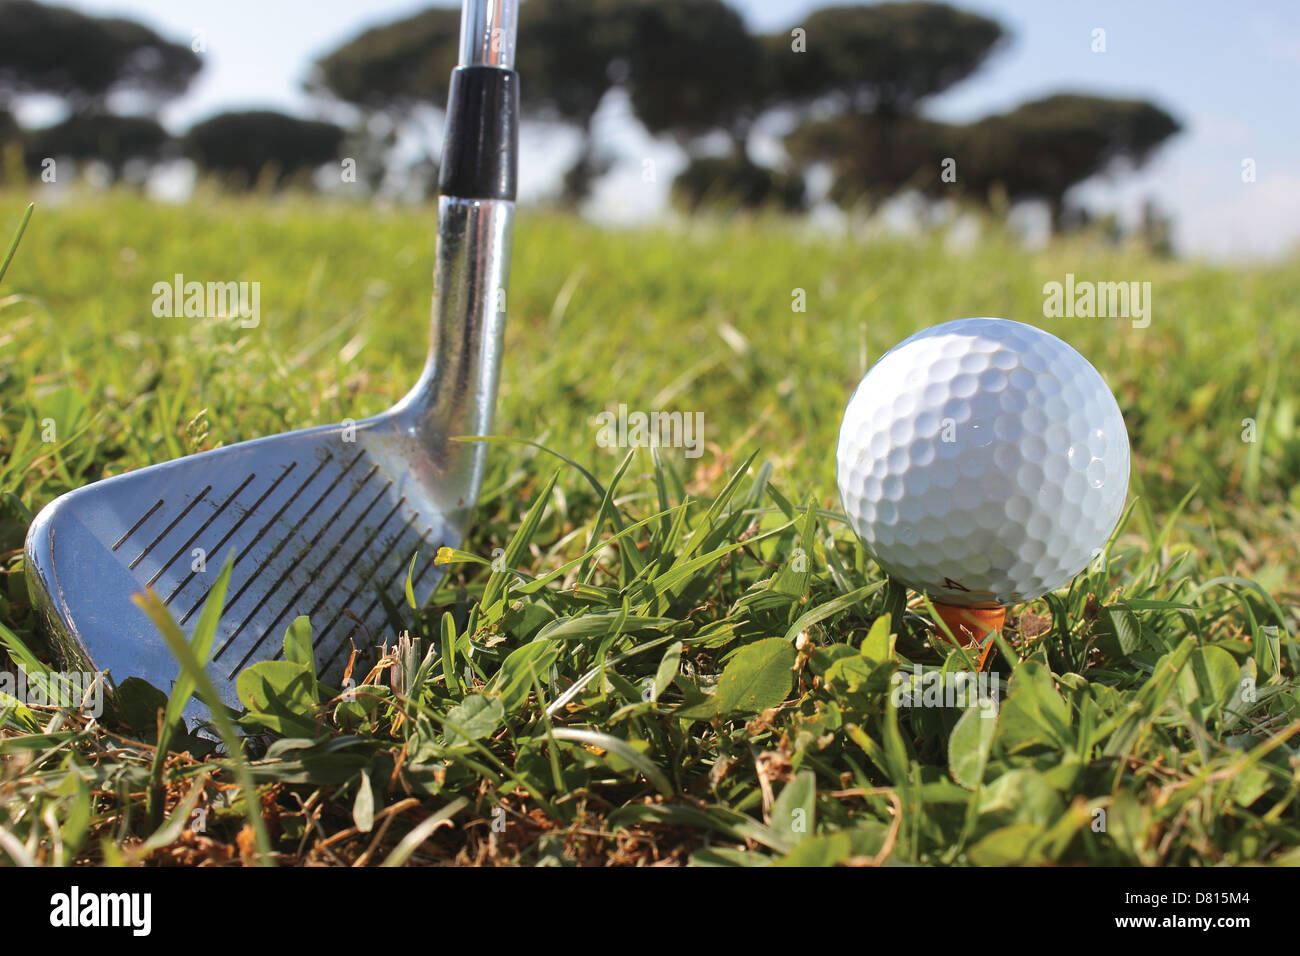 Club de Golf de Roma, bola, club y paisaje Foto de stock